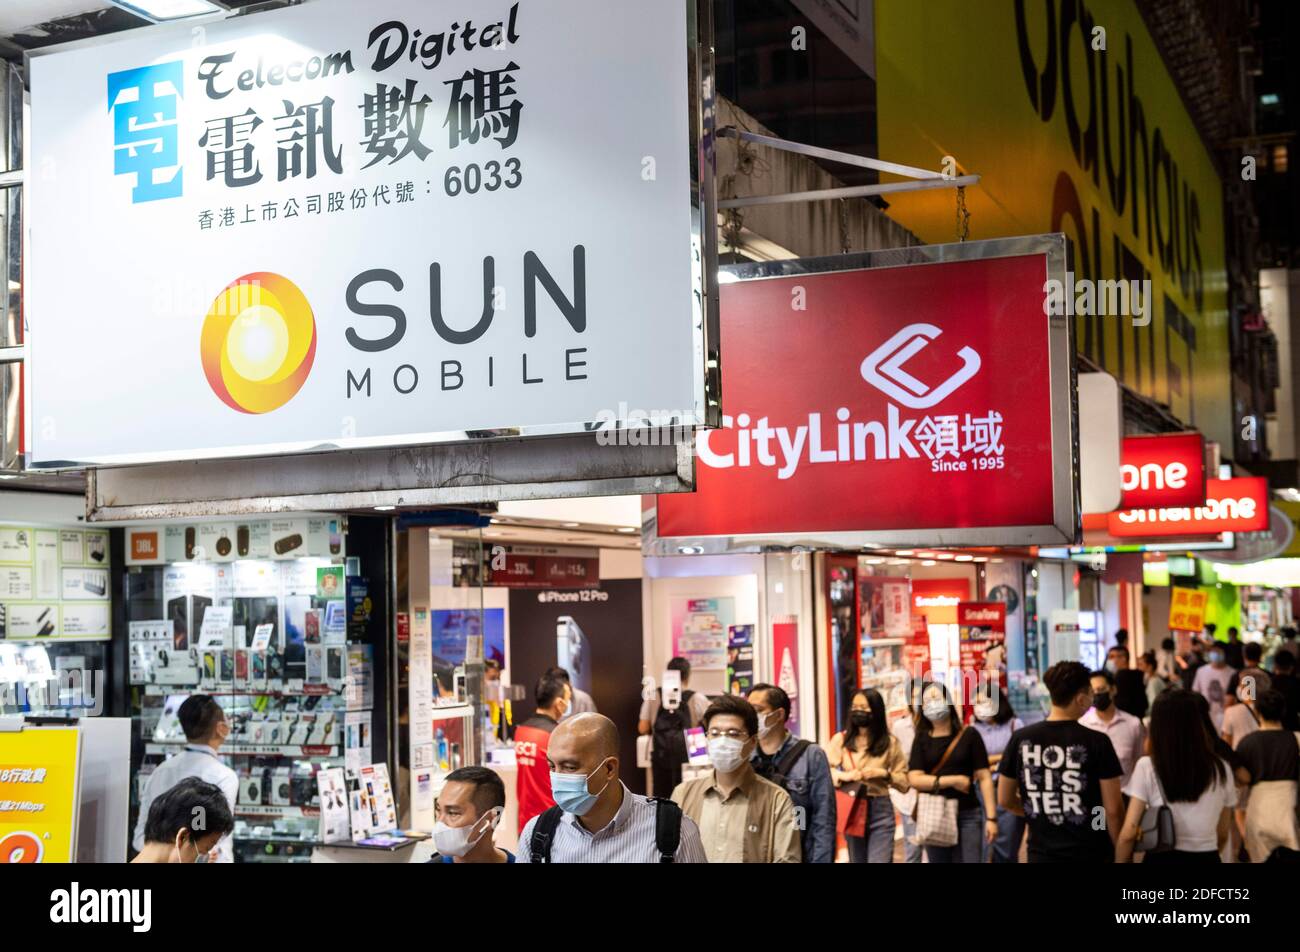 19 novembre 2020, Hong Kong, Chine: Des piétons marchent devant plusieurs sociétés de télécommunications Sun Mobile, Citylink, magasins de Vodaphone à Hong Kong. (Image de crédit : © Budrul Chukrut/SOPA Images via ZUMA Wire) Banque D'Images